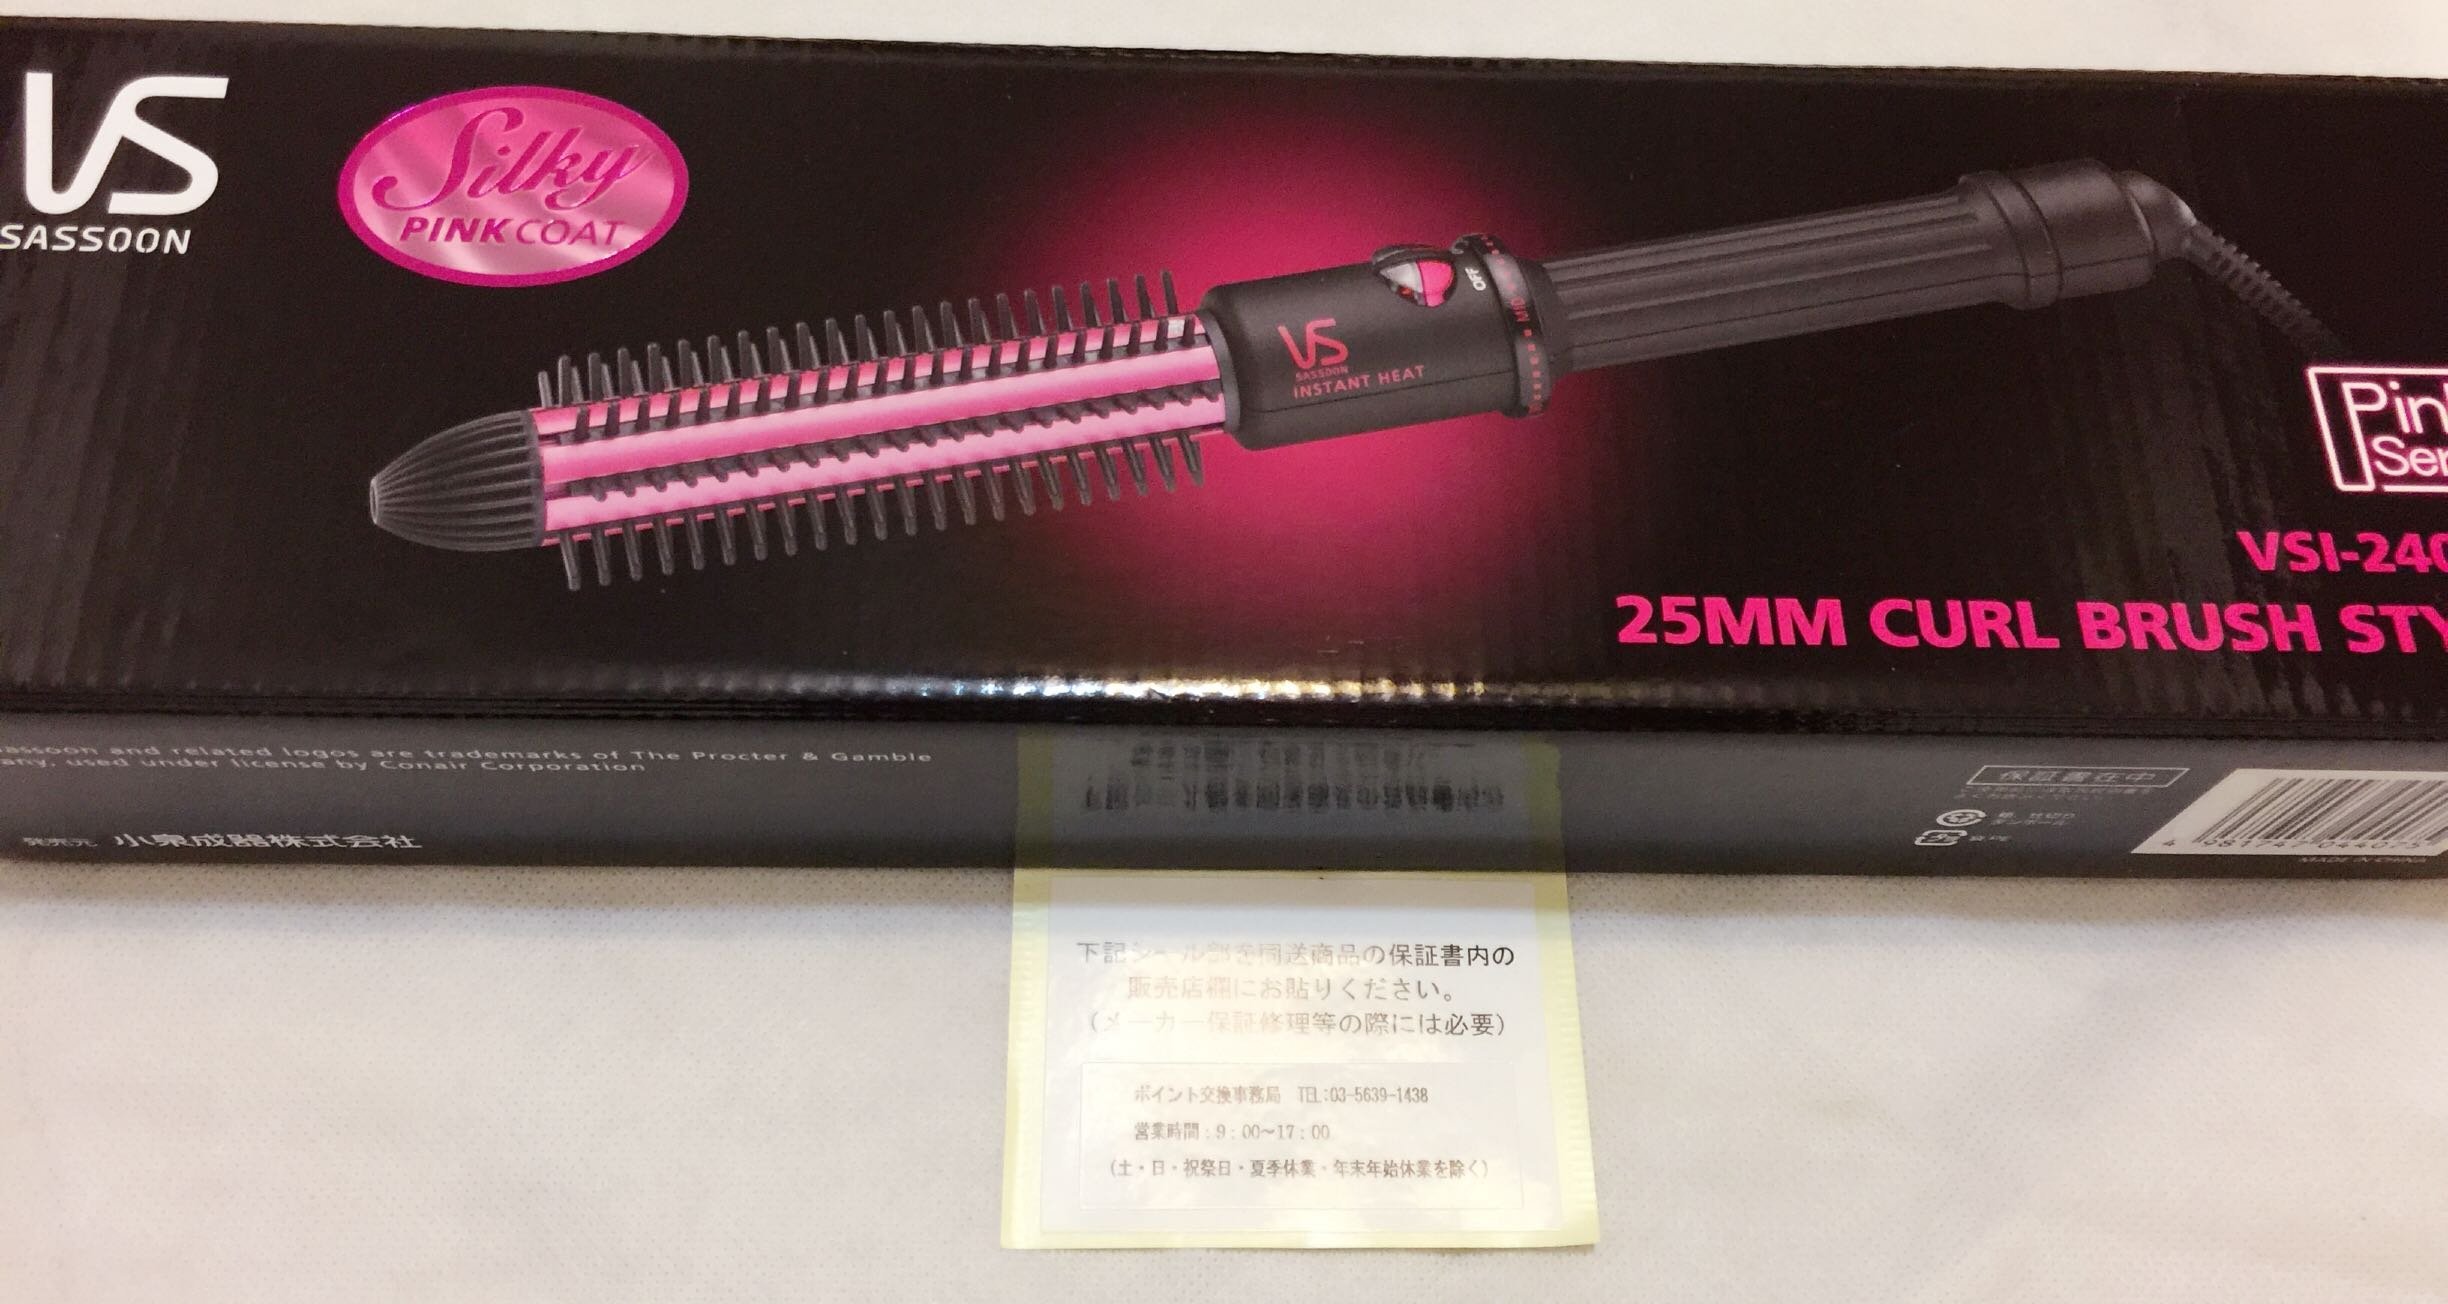 電棒 沙宣美髮電熱髮捲 整髮器 VSI-2400/PJ 桃紅色  美髮不求人